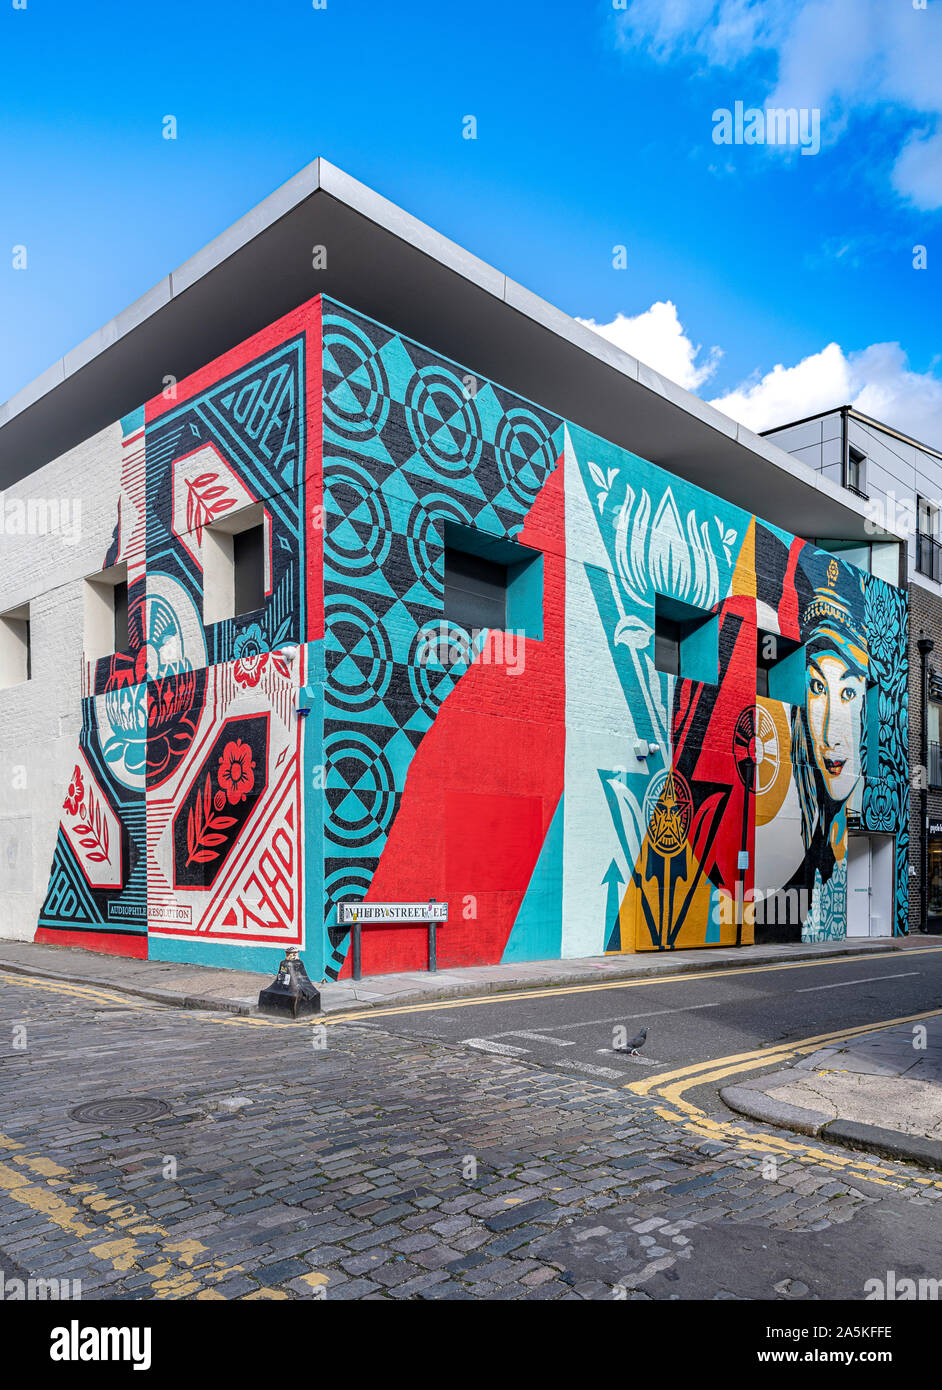 Nouveau géant mural conçu et réalisé par Shepard Fairey sur Whitby Street, Londres Banque D'Images